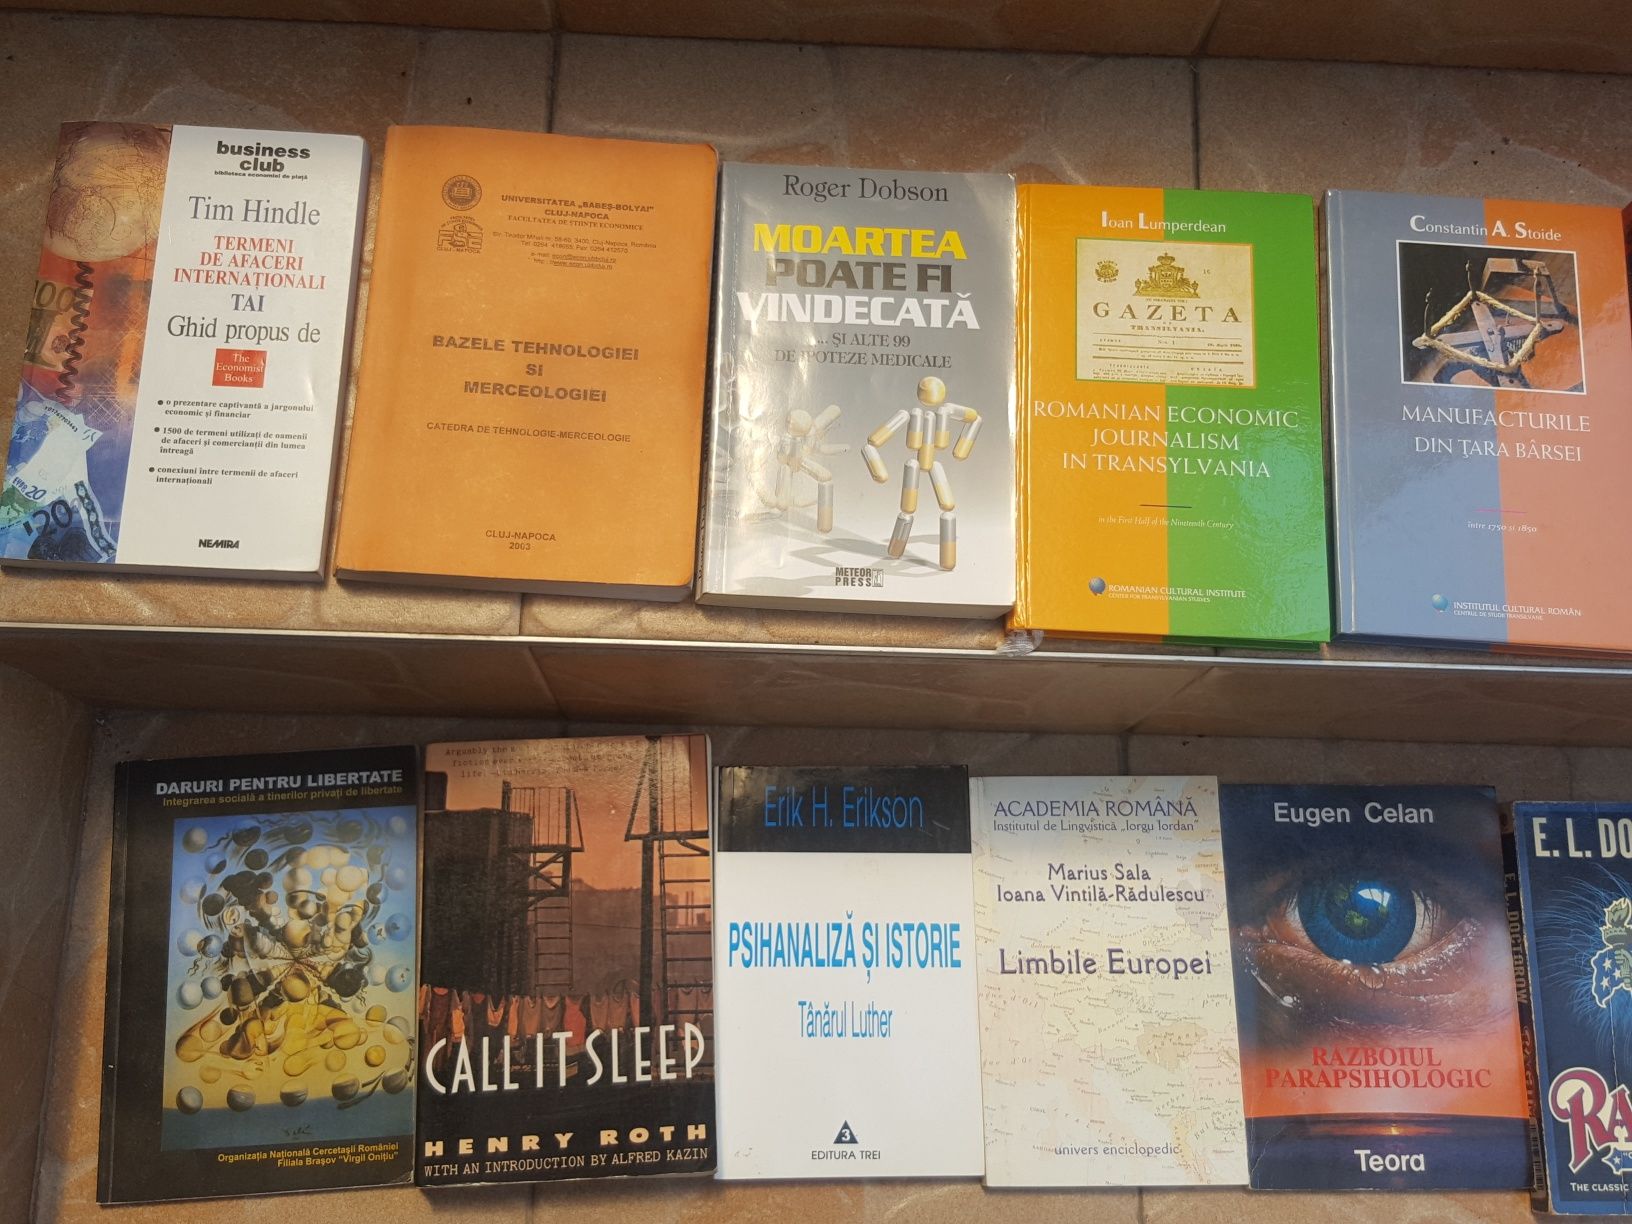 Cărți în engleză și română, romane, manuale tehnice